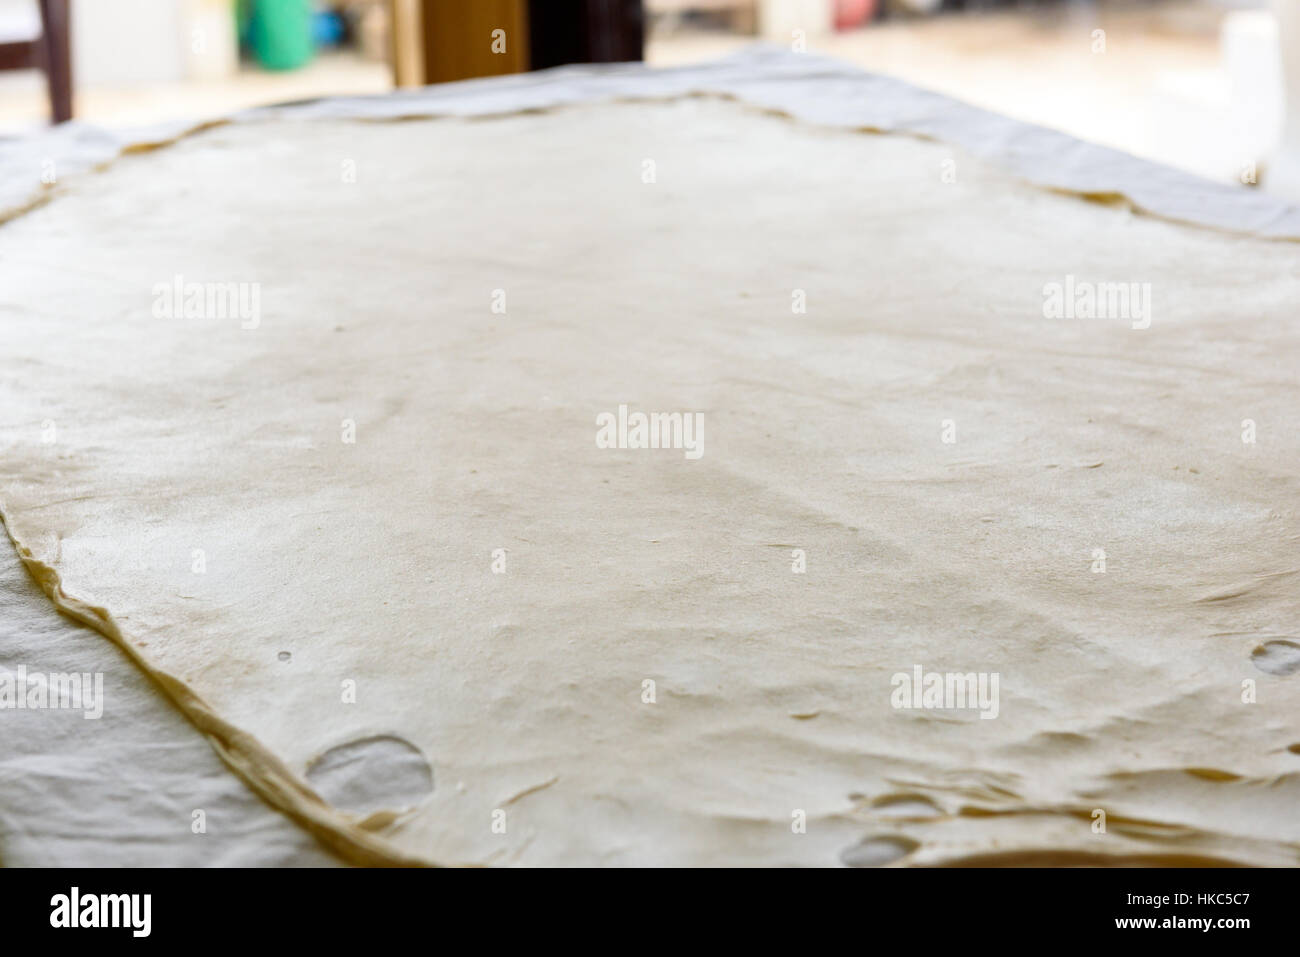 Pâte filo strudel faits maison ou de pâte sur un tapis de table d'accueil, prêt à l'Apfelstrudel, baklava, Burek, tarte ou autre type de pâtisserie traditionnelle. Banque D'Images